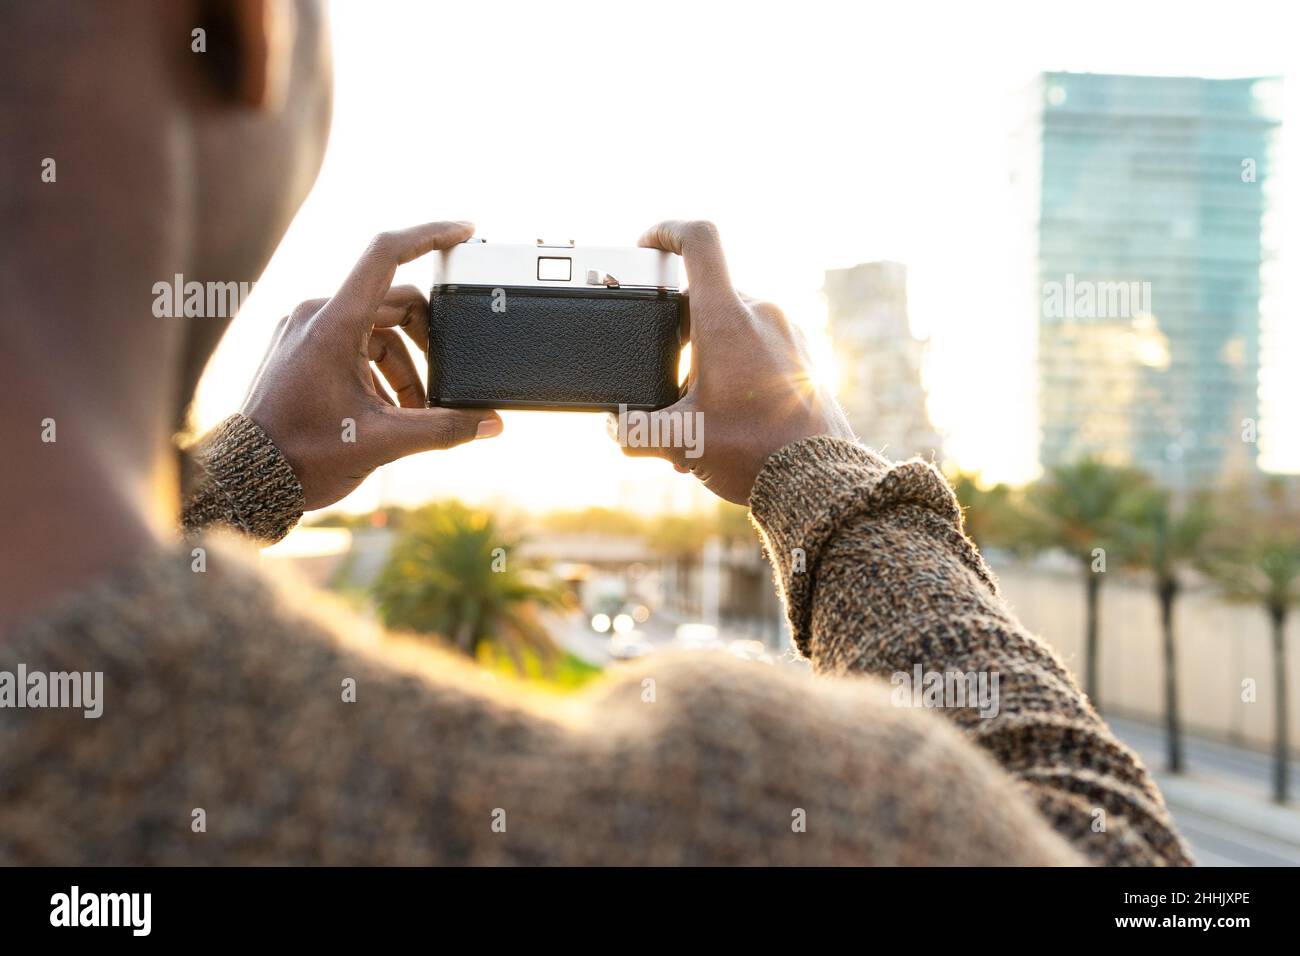 Rückansicht eines nicht erkennbaren kahlen afroamerikanischen Fotografen, der mit der Fotokamera fotografiert, während er auf einem Rasen in der Stadt mit Bäumen steht Stockfoto